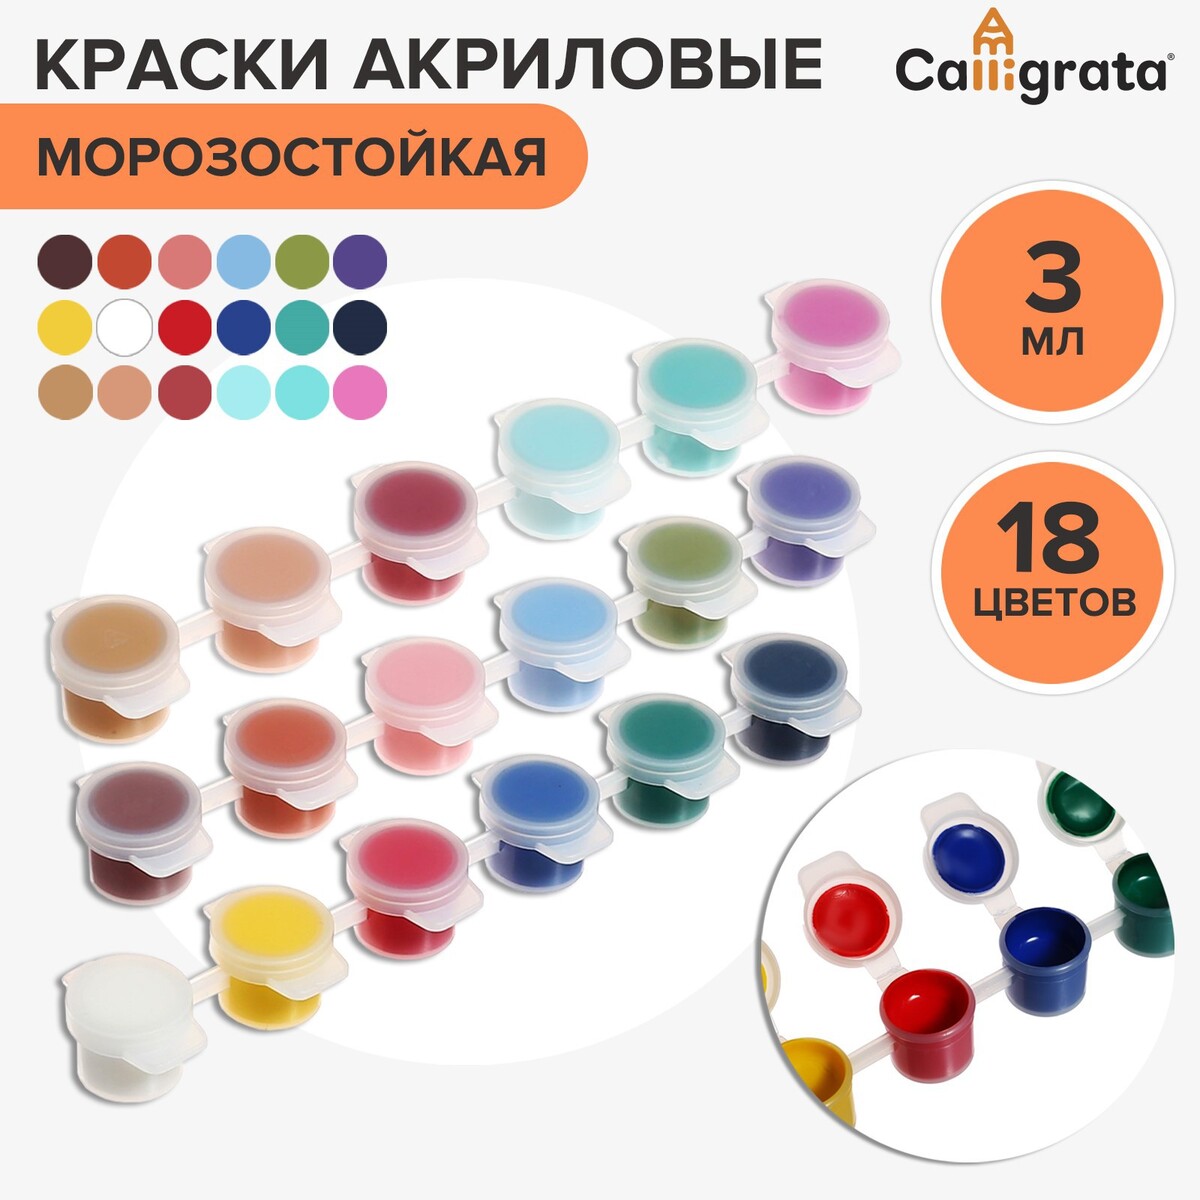 Краска акриловая, набор 18 цветов х 3 мл, calligrata, морозостойкие, в пакете акриловая краска для моделизма светло оливковая